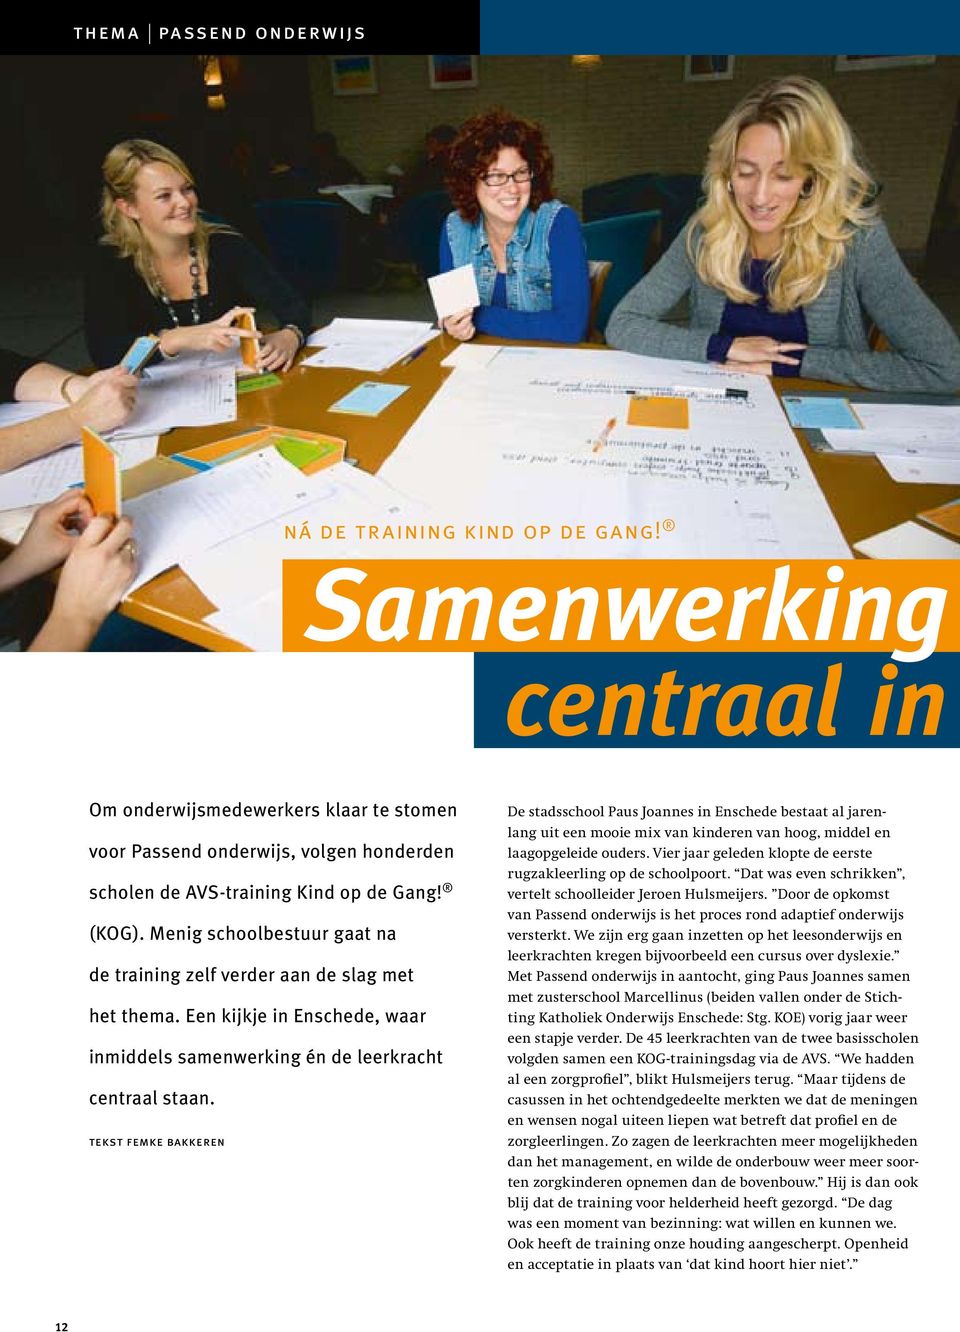 Menig schoolbestuur gaat na de training zelf verder aan de slag met het thema. Een kijkje in Enschede, waar inmiddels samenwerking én de leerkracht centraal staan.